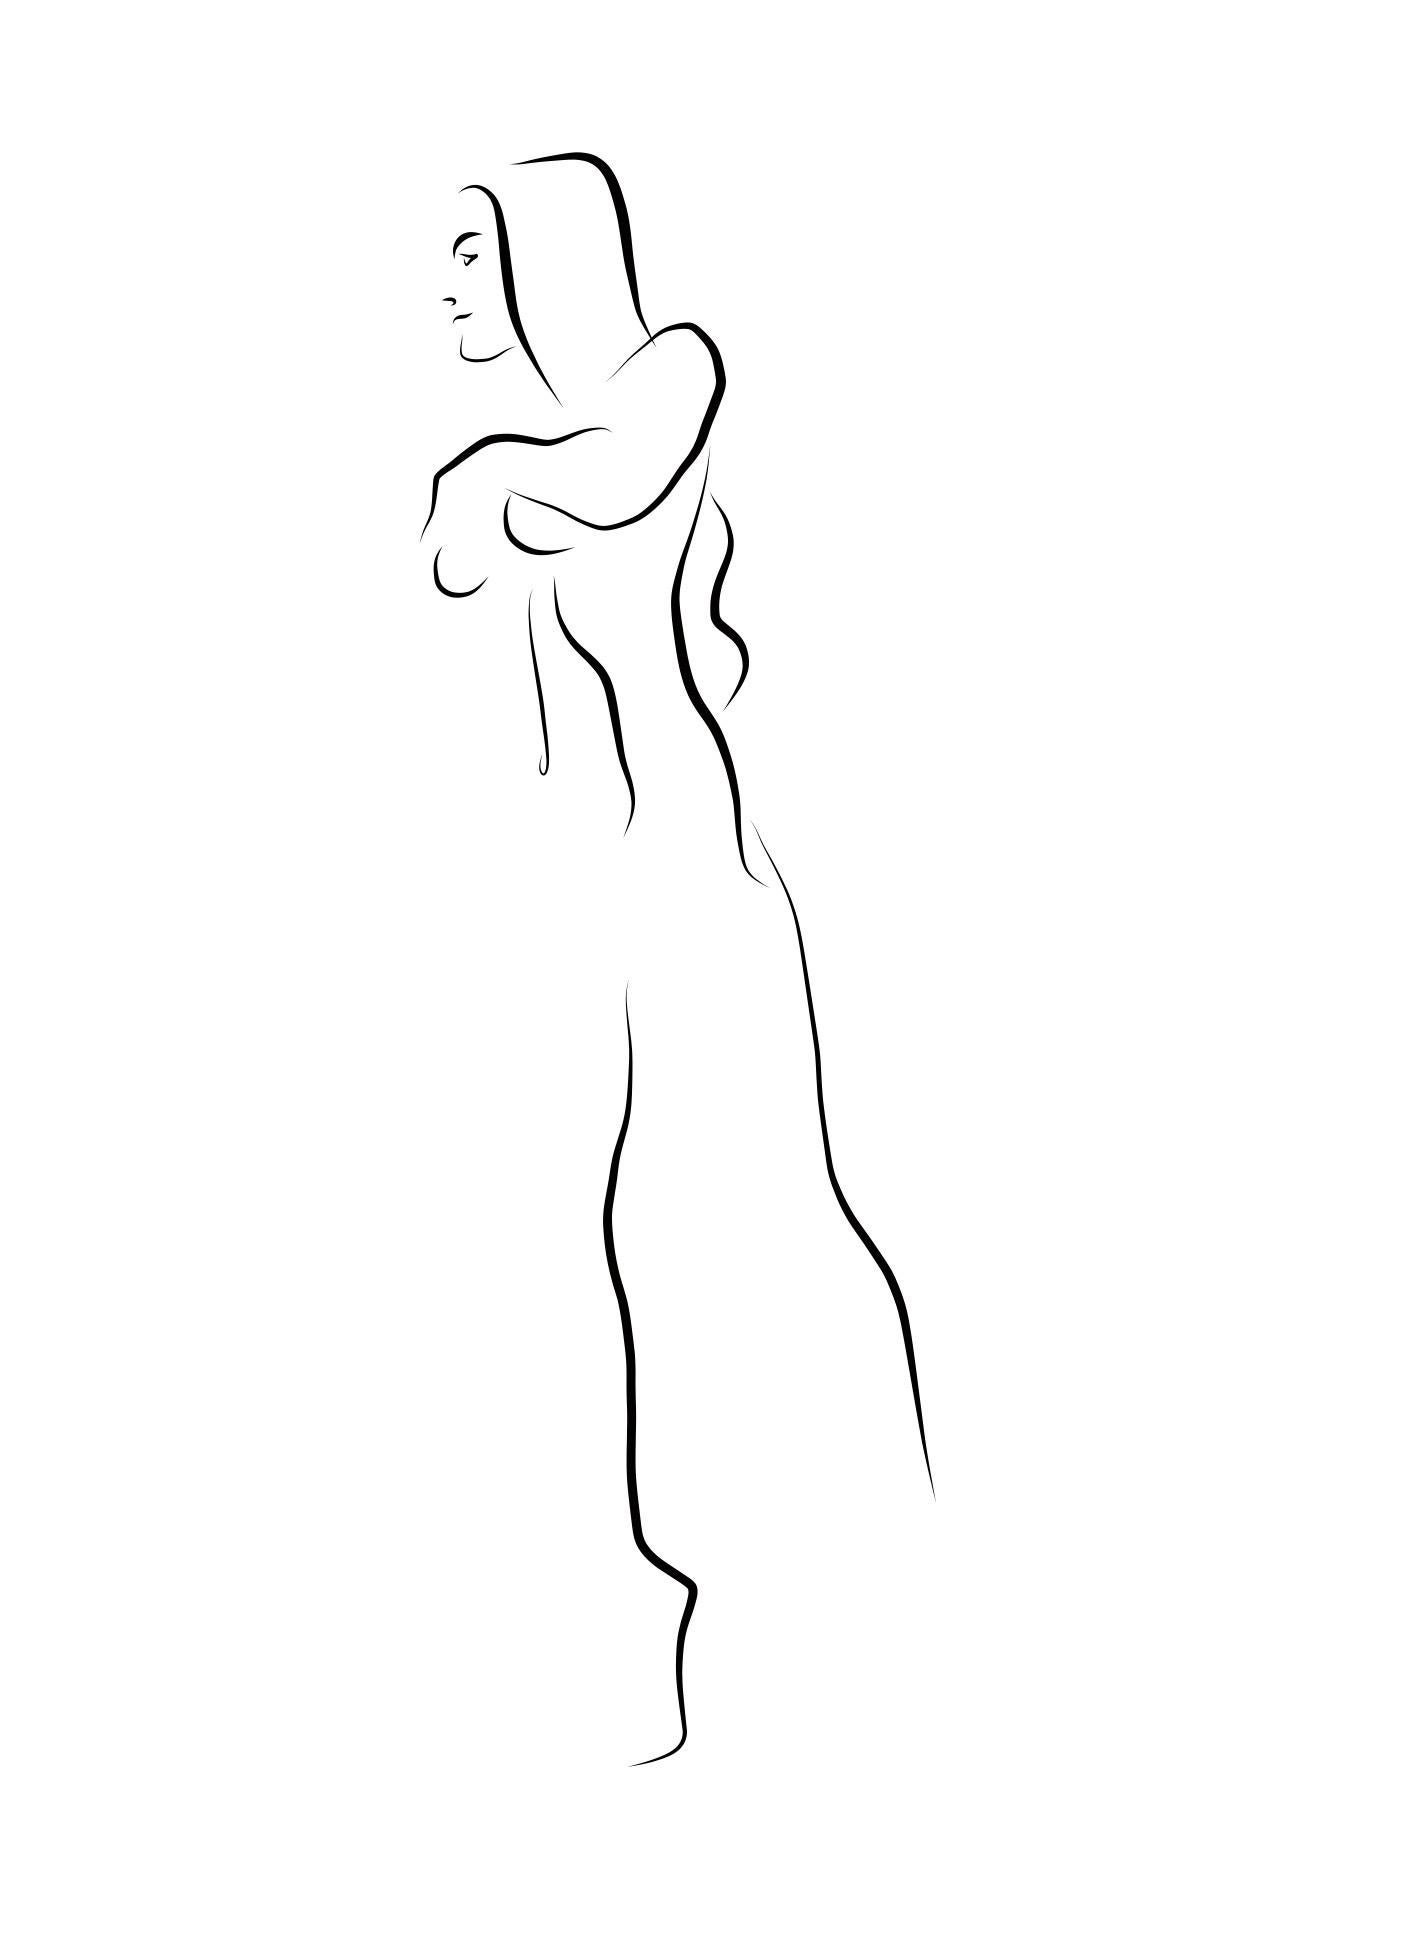 Michael Binkley Nude Print - Haiku #12, 1/50  - Digital Vector Drawing B&W Walking Female Nude Woman Figure